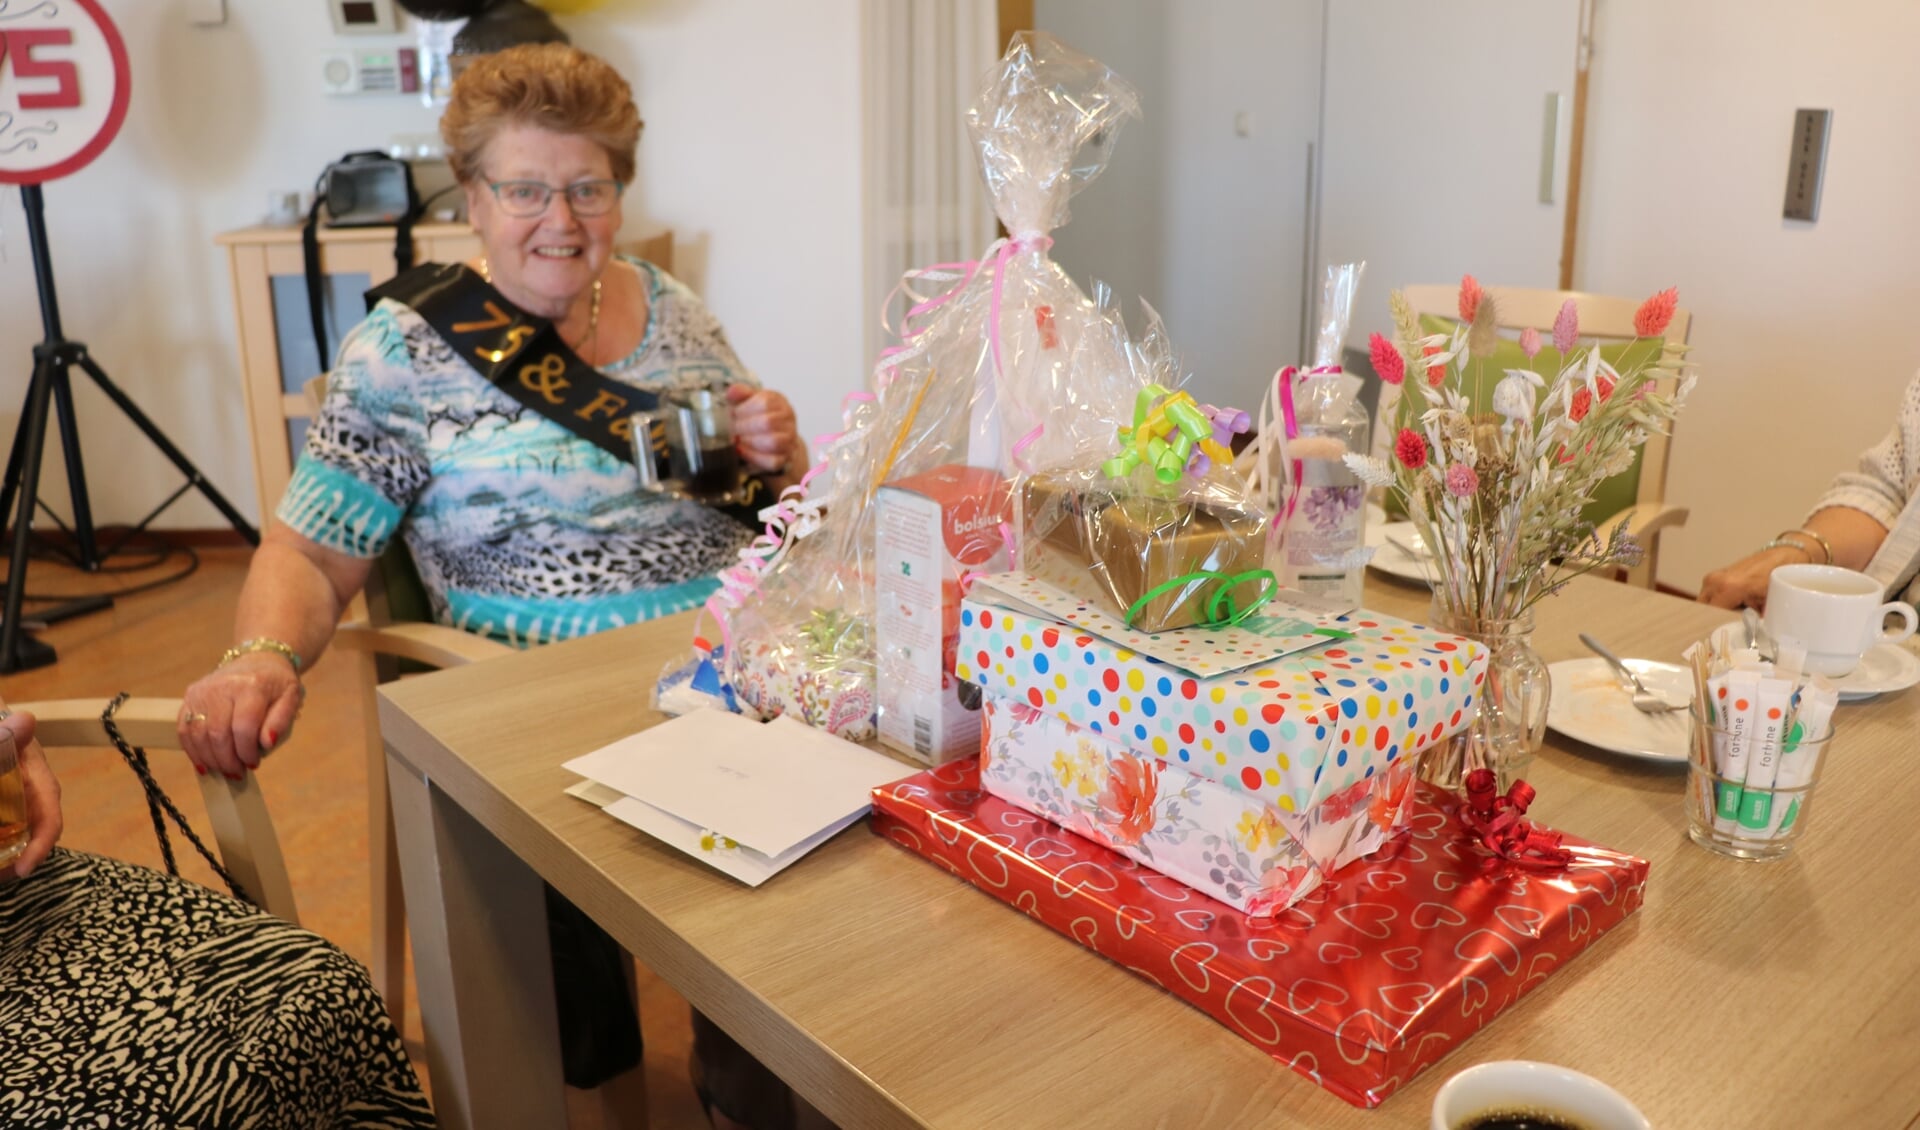 Bets werd voor haar 75e verjaardag verwend met mooie cadeaus.